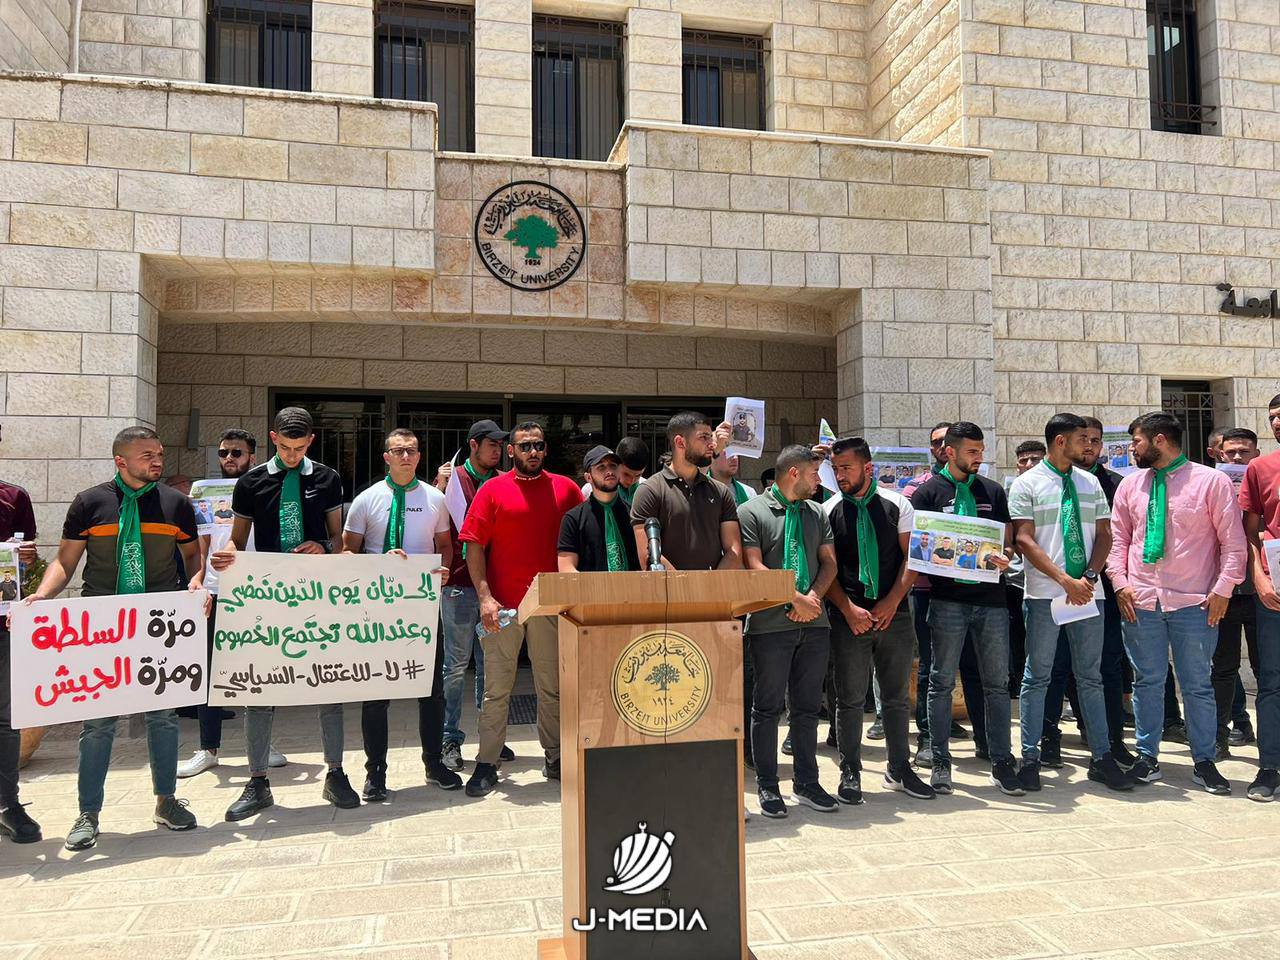 كتلة جامعة بيرزيت تعلن عن اعتصام مفتوح حتى الإفراج عن طلابها من سجون السلطة